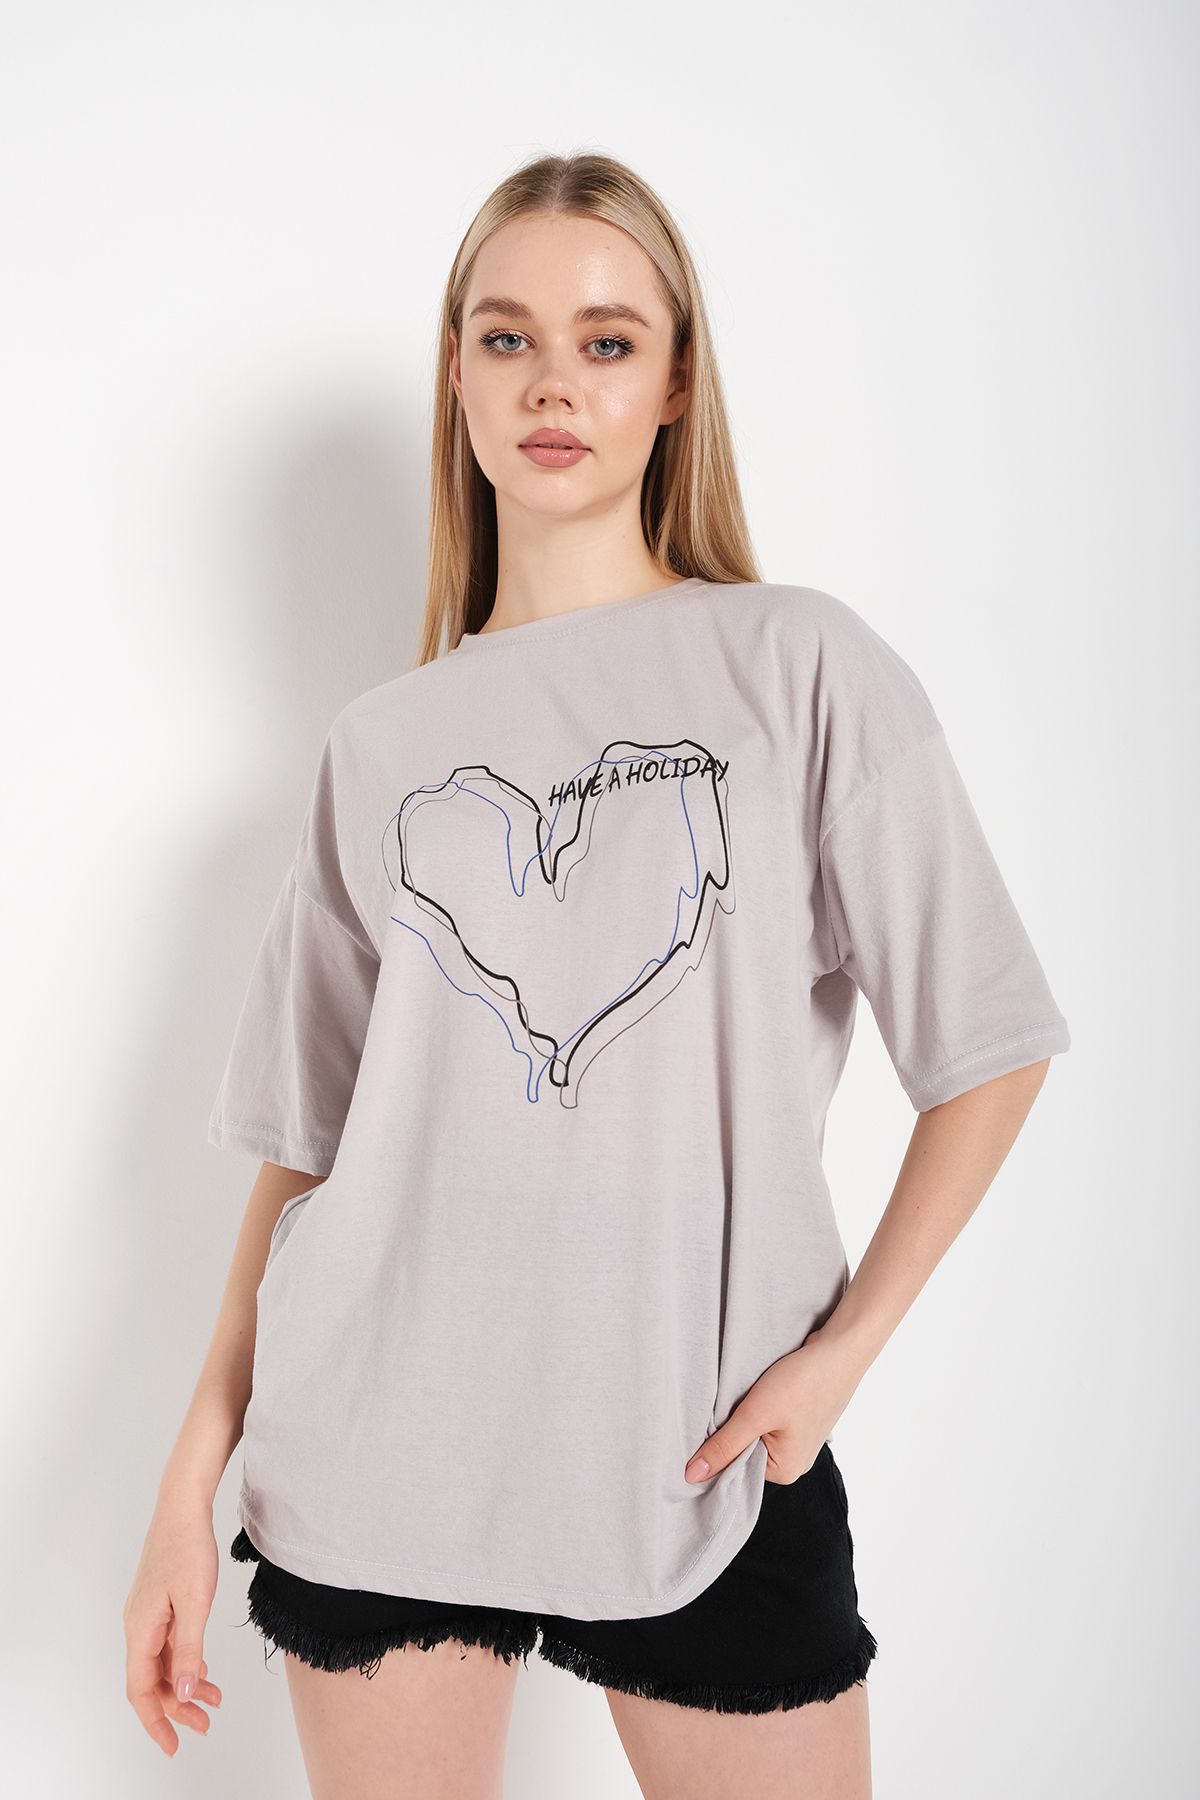 Trendseninle Kadın Çizgili Figür Kalp Boyamalı Gri T-shirt Have A Holiday Baskılı